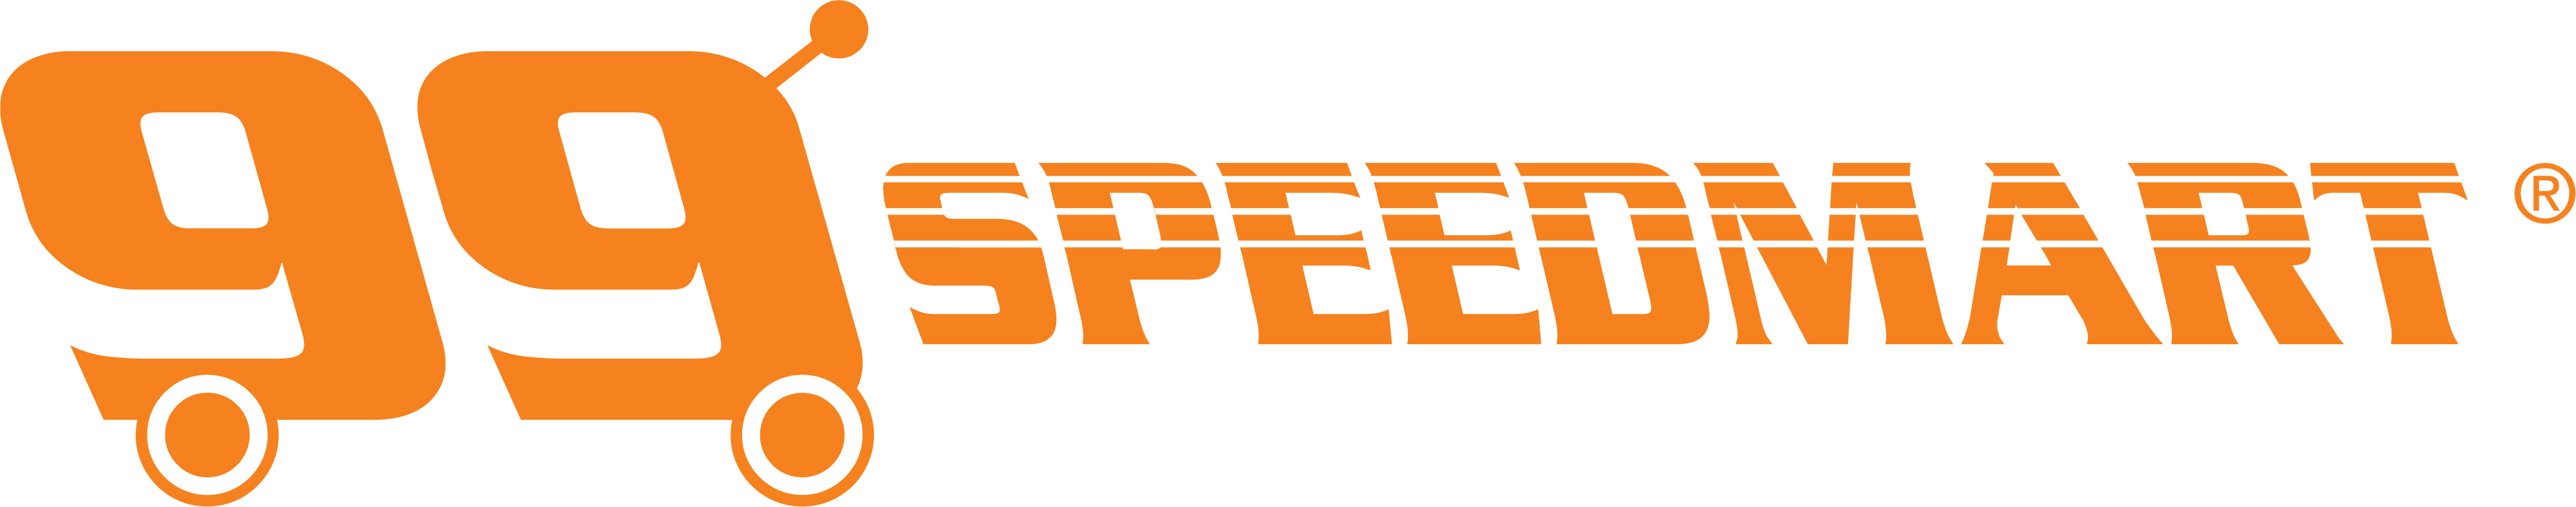 Speedmart online 99 99 speedmart